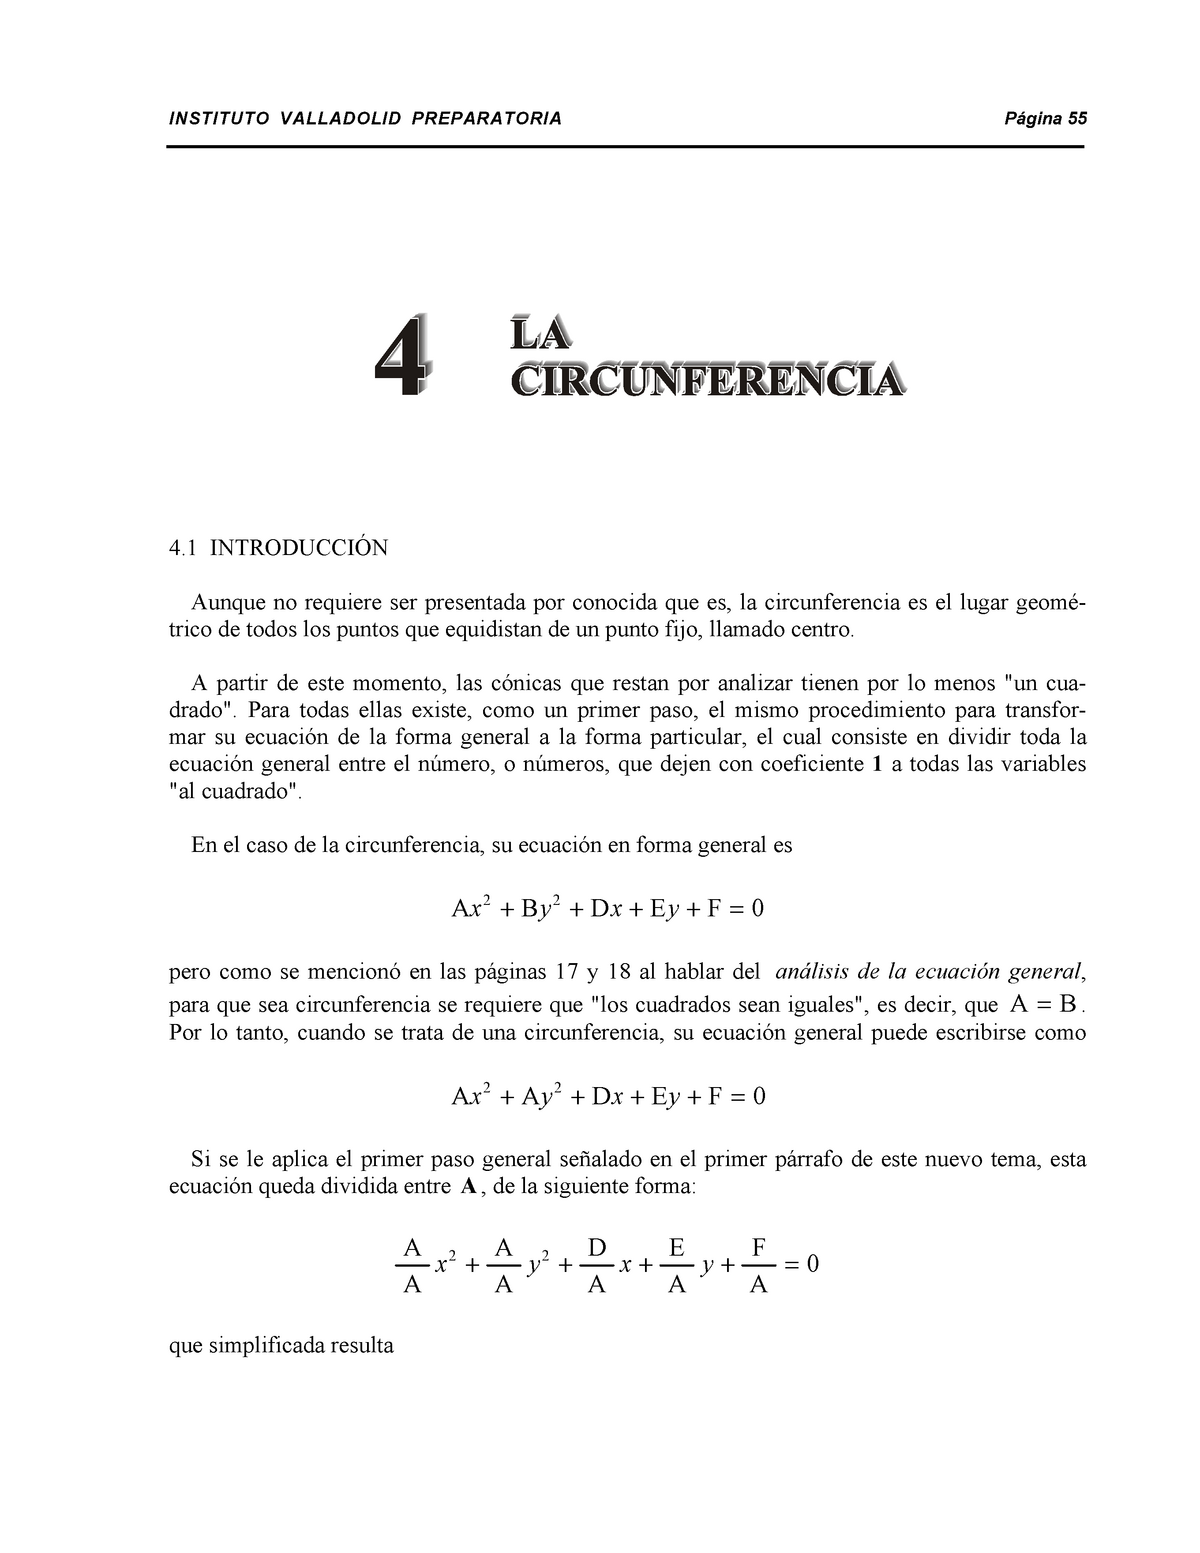 Circunferencia Curso Ingreso A La Universidad 100940 Studocu